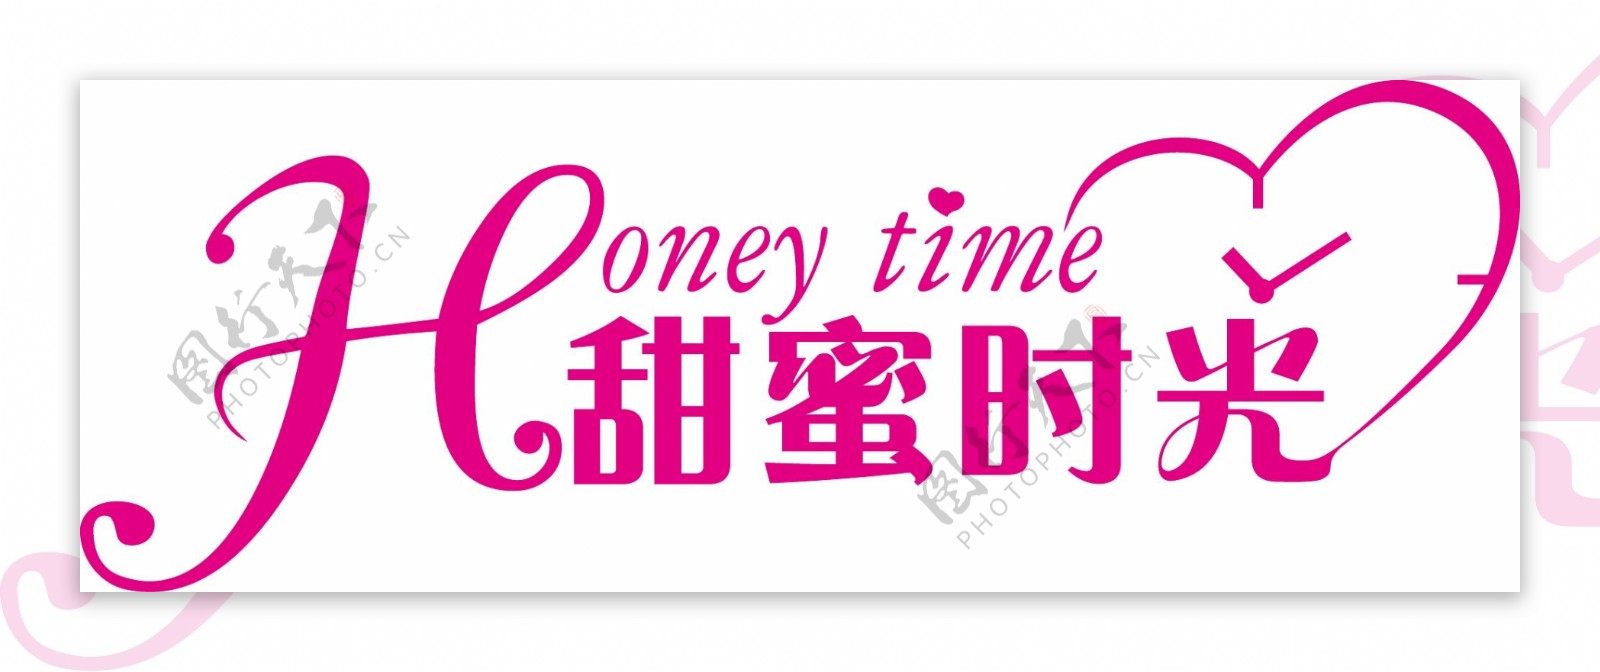 甜蜜时光logo